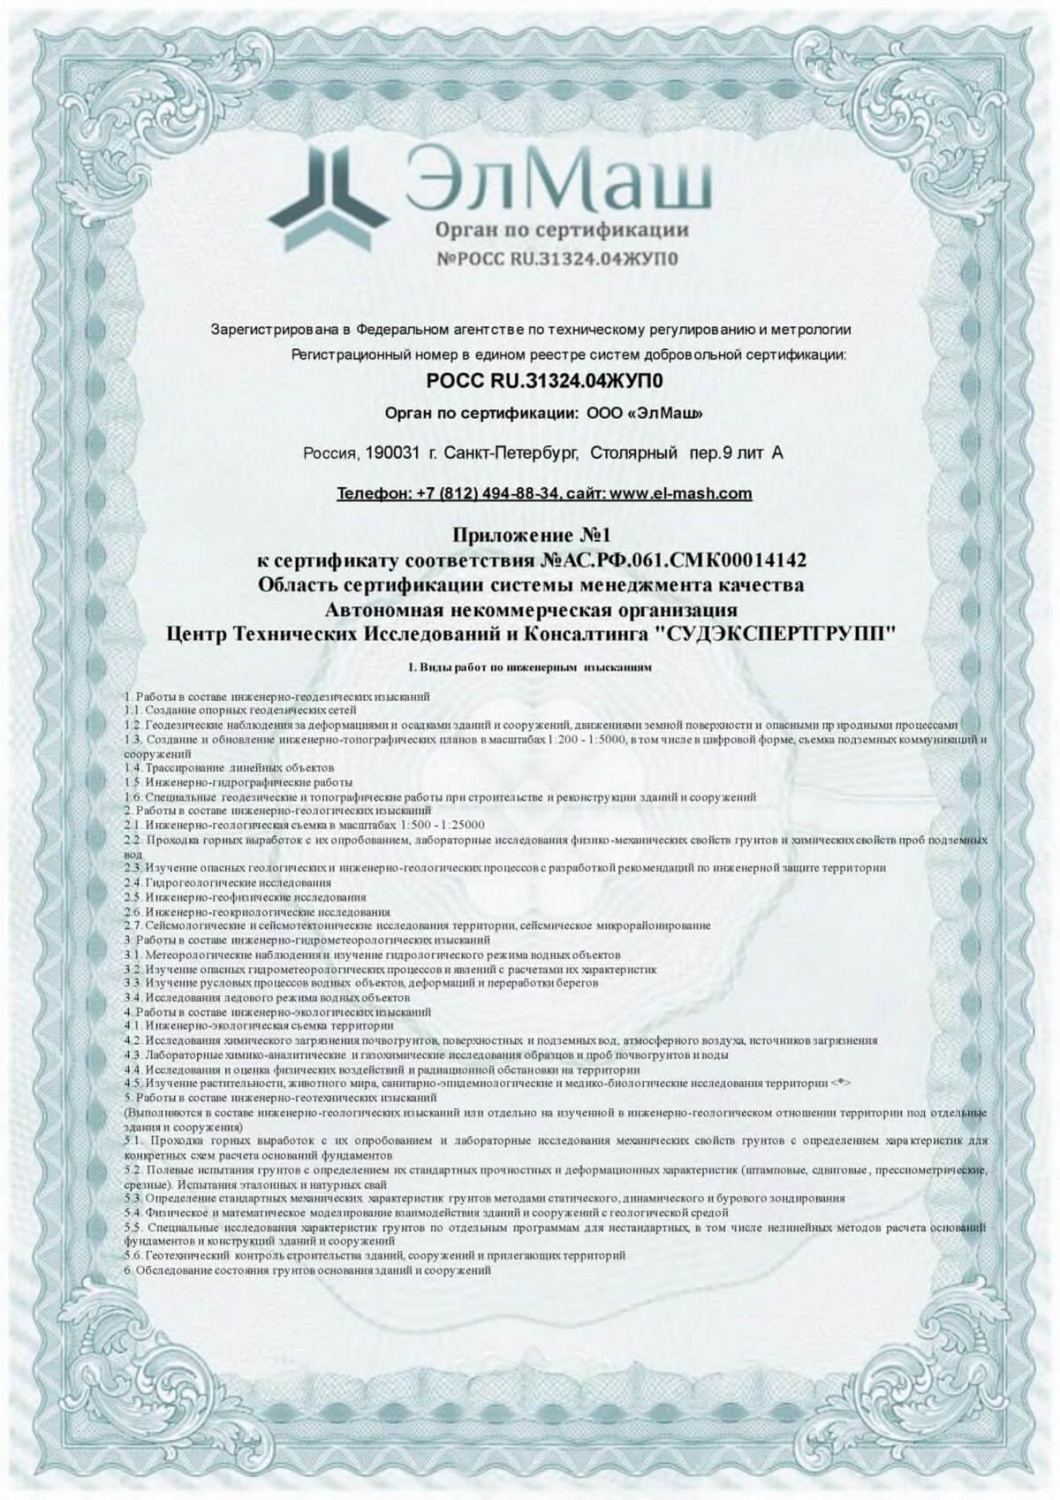 Приложение к сертификату соответствия (Лист 1)